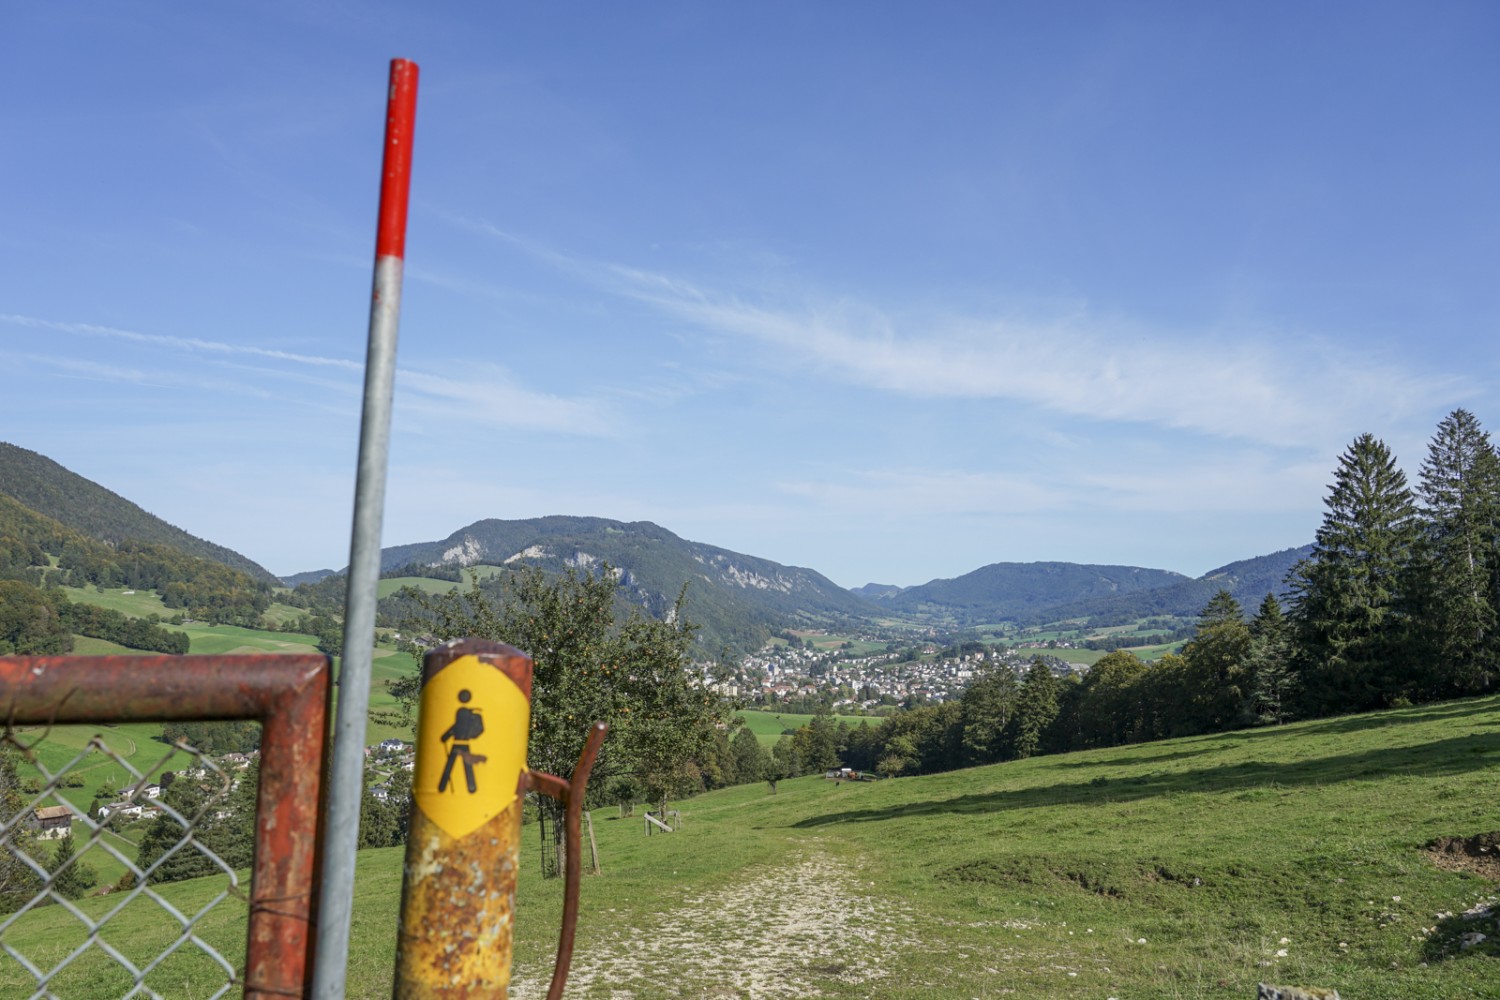 Le chemin revient à Perrefitte en traversant des pâturages boisés, avec vue sur Moutier. Photo : Reto Wissmann